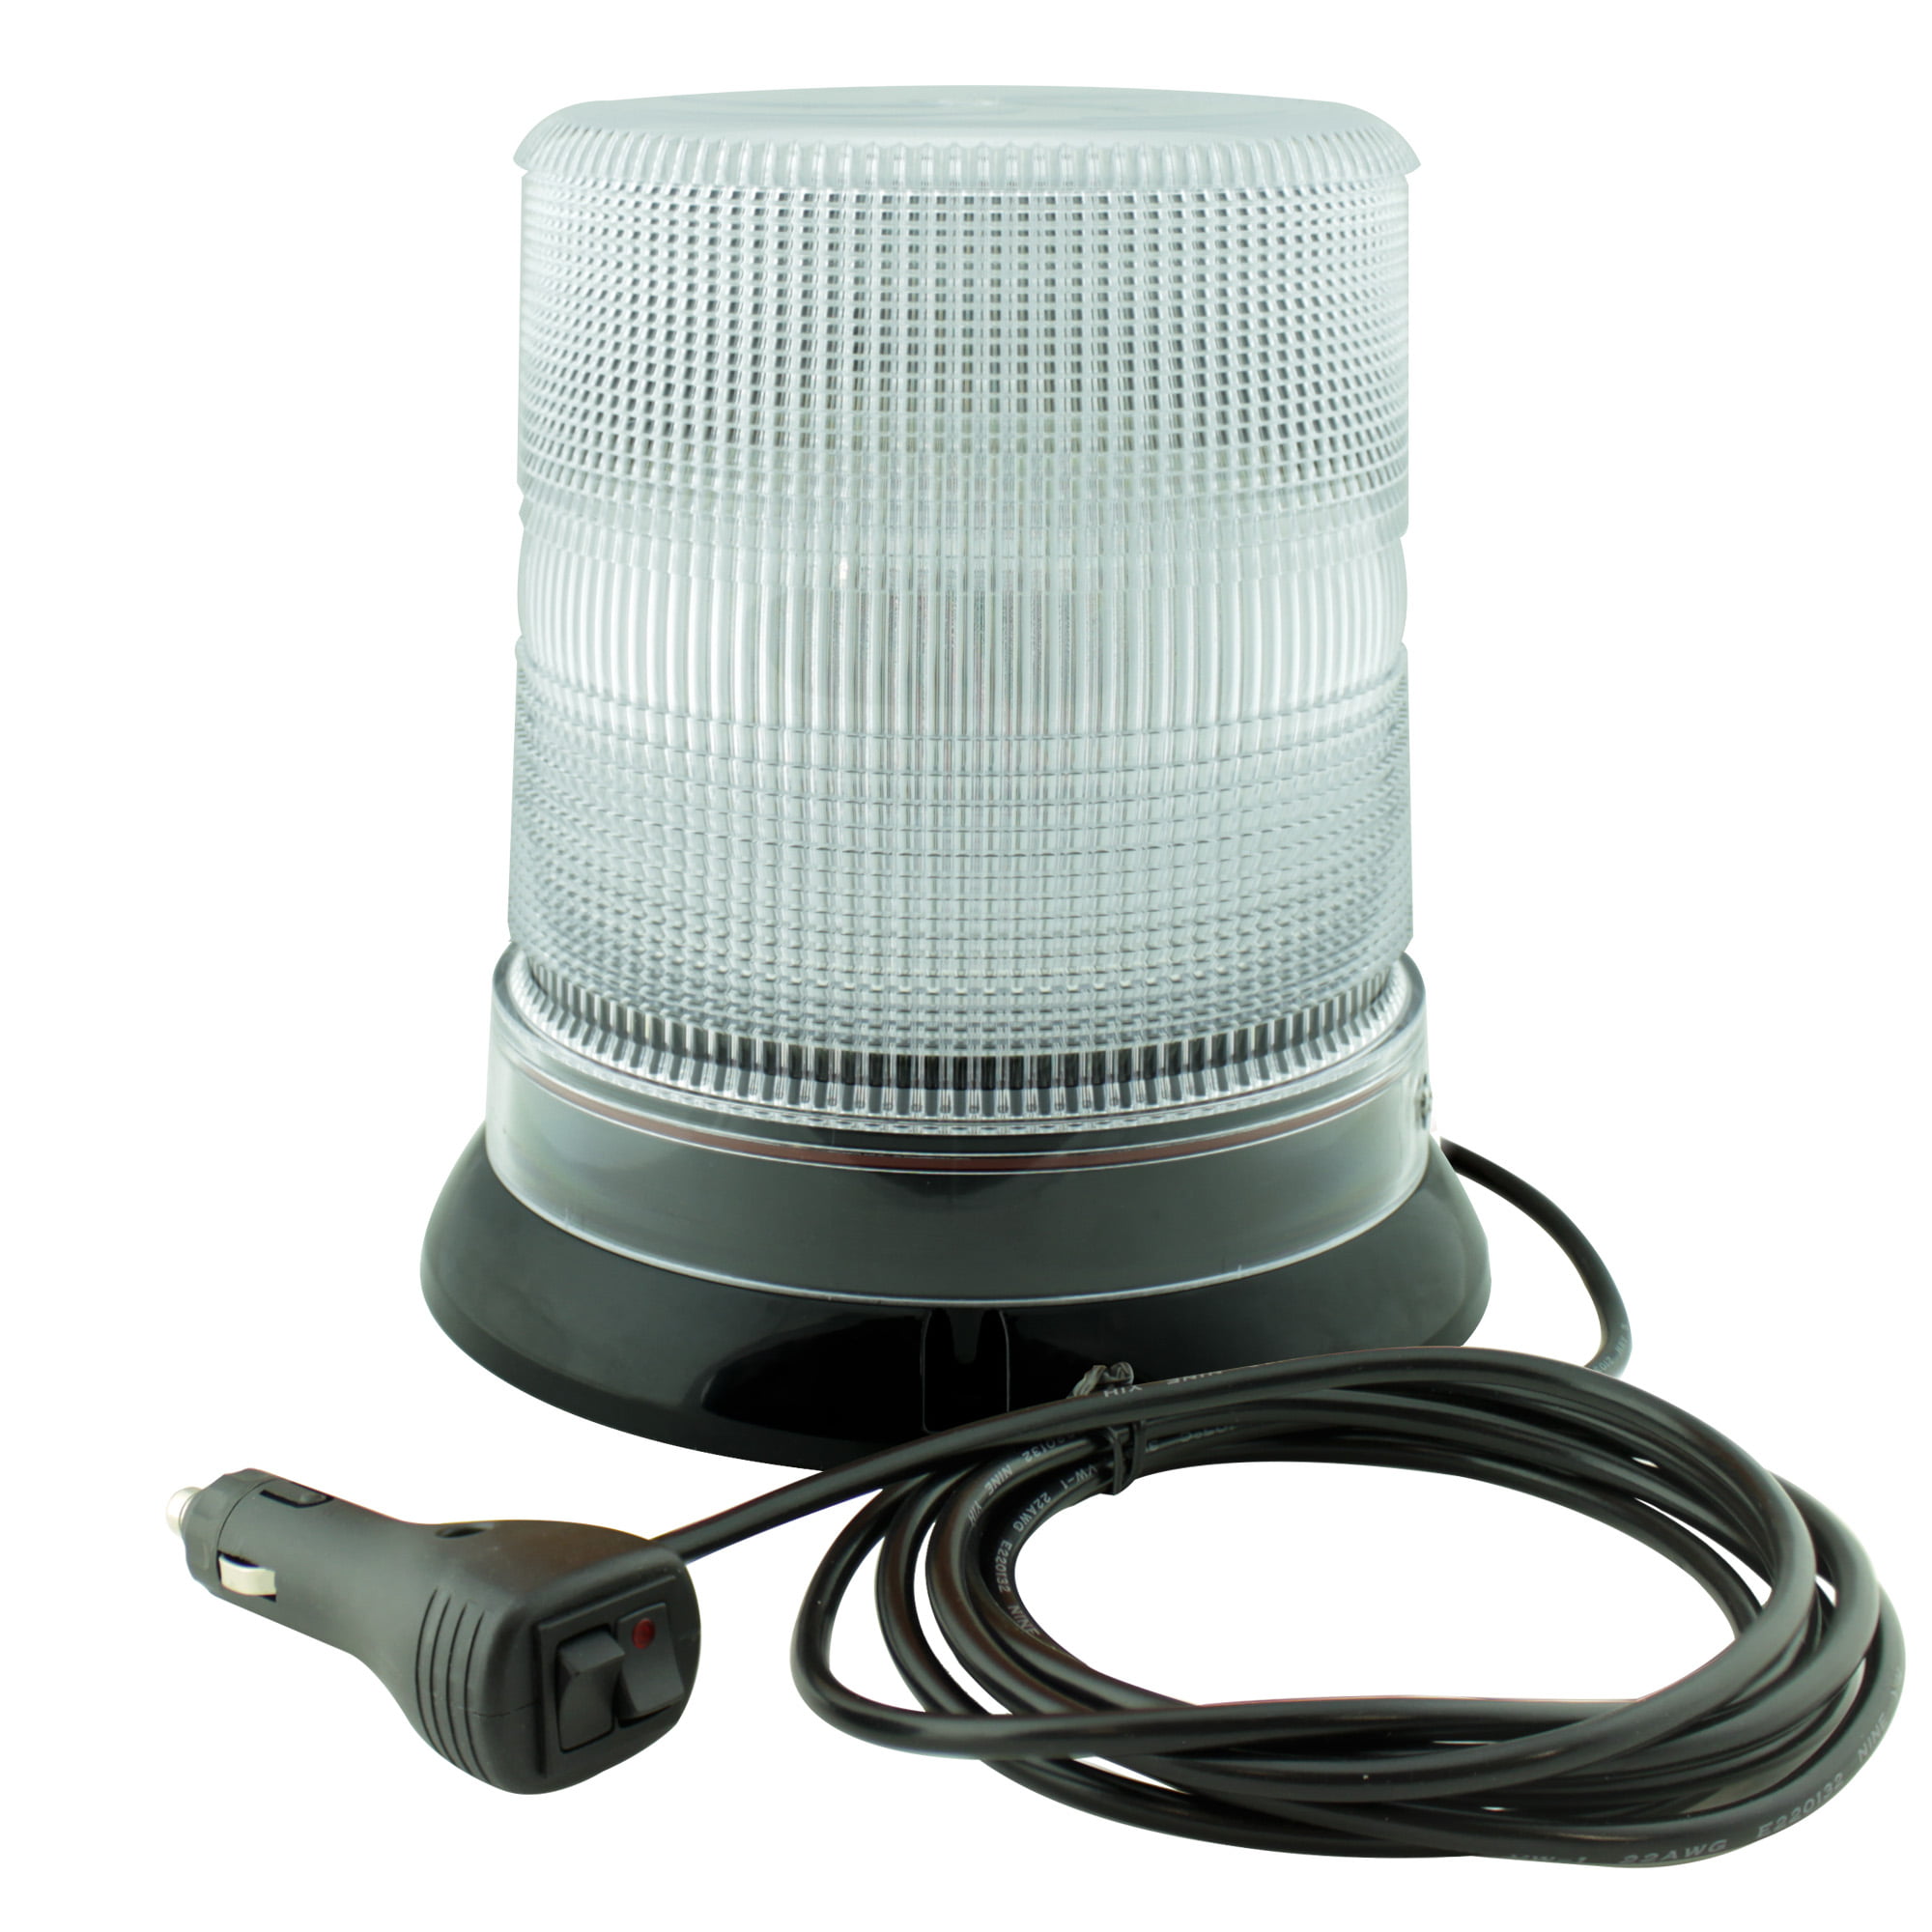 LED Hideaway Strobe Lights - Mini Emergency Vehicle LED Warning